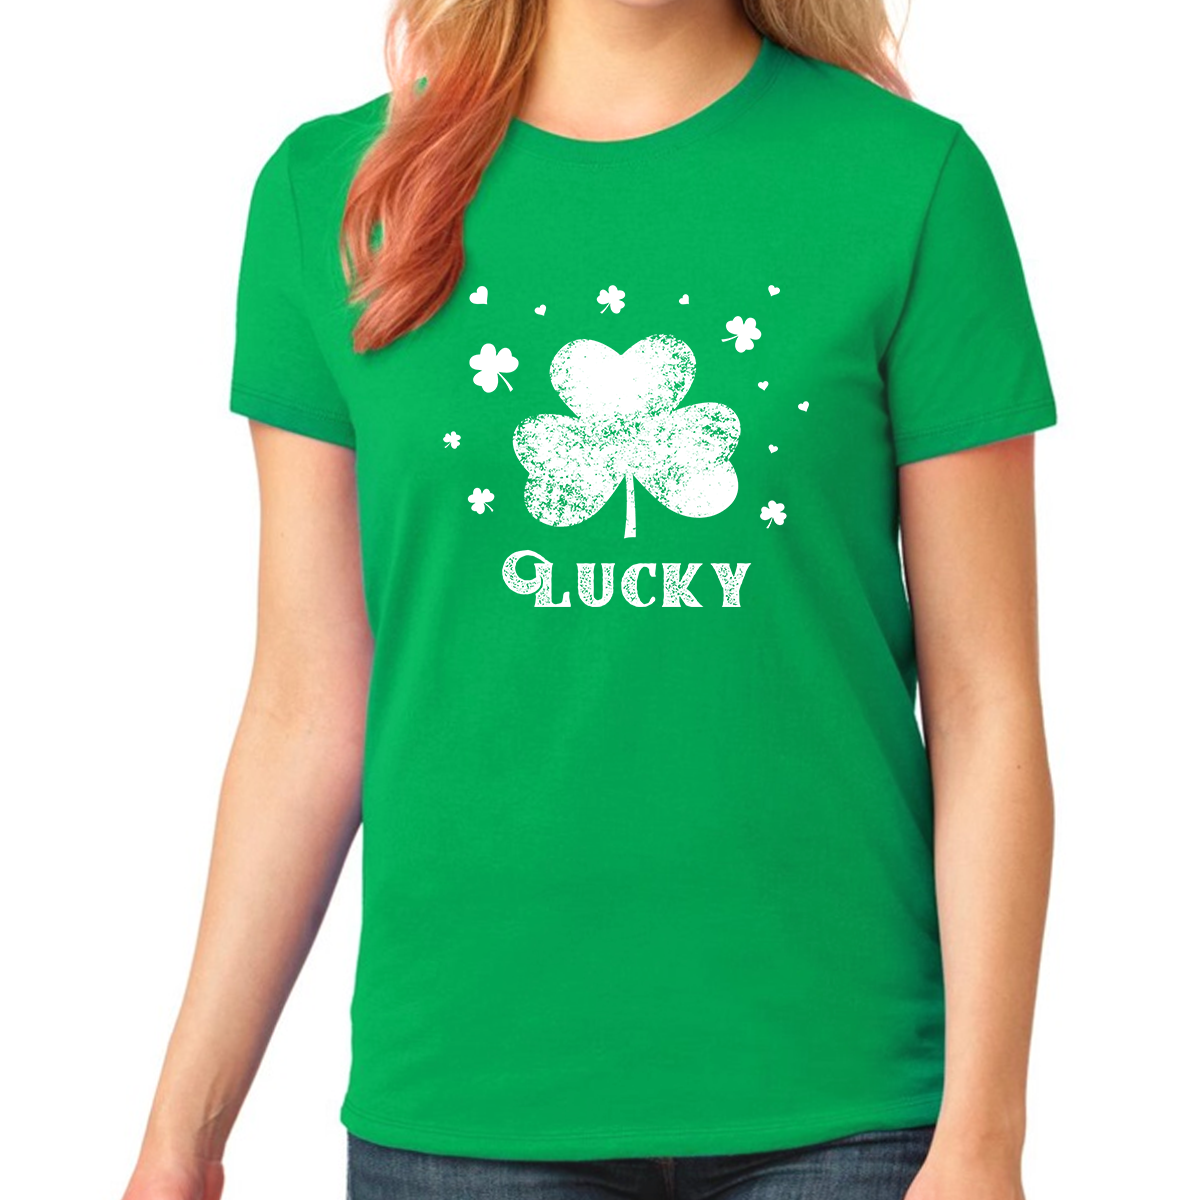 Girls St Patricks Day Shirt Kids Lucky Shamrock Shirt St Pattys Day Shirts For Girls Irish Clover Shirt